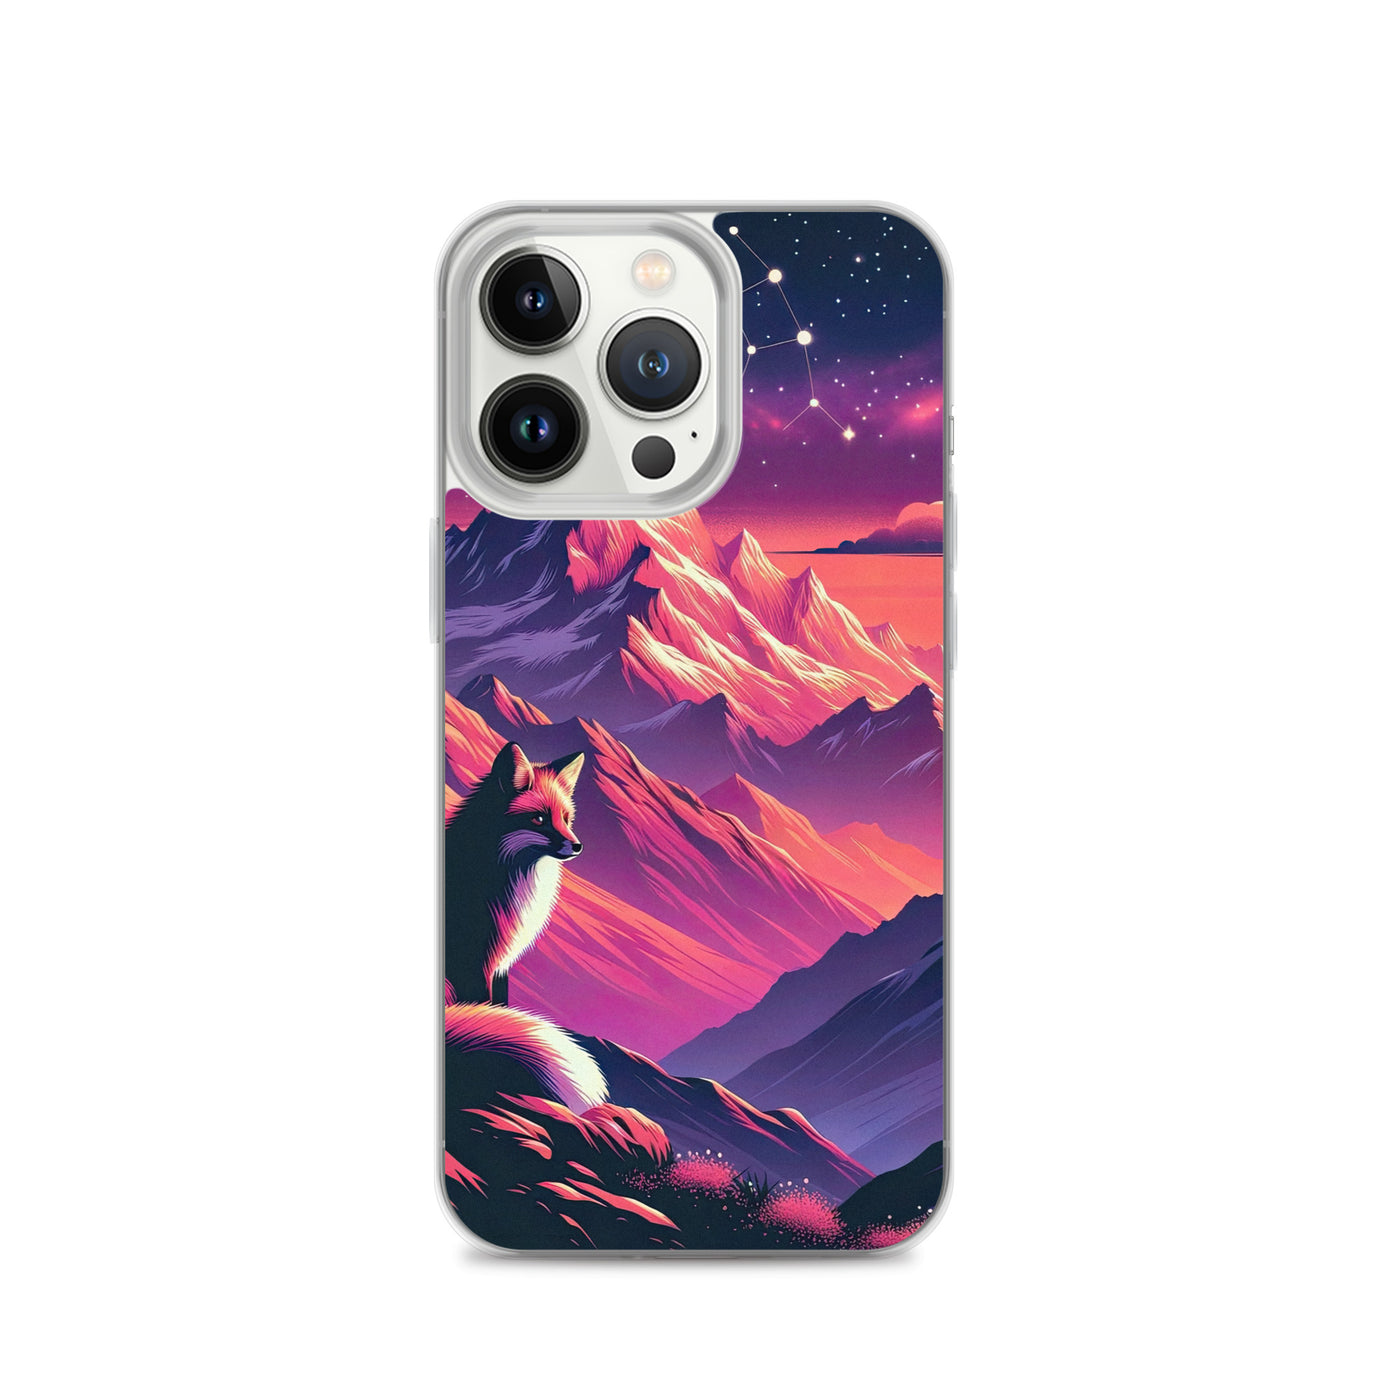 Fuchs im dramatischen Sonnenuntergang: Digitale Bergillustration in Abendfarben - iPhone Schutzhülle (durchsichtig) camping xxx yyy zzz iPhone 13 Pro